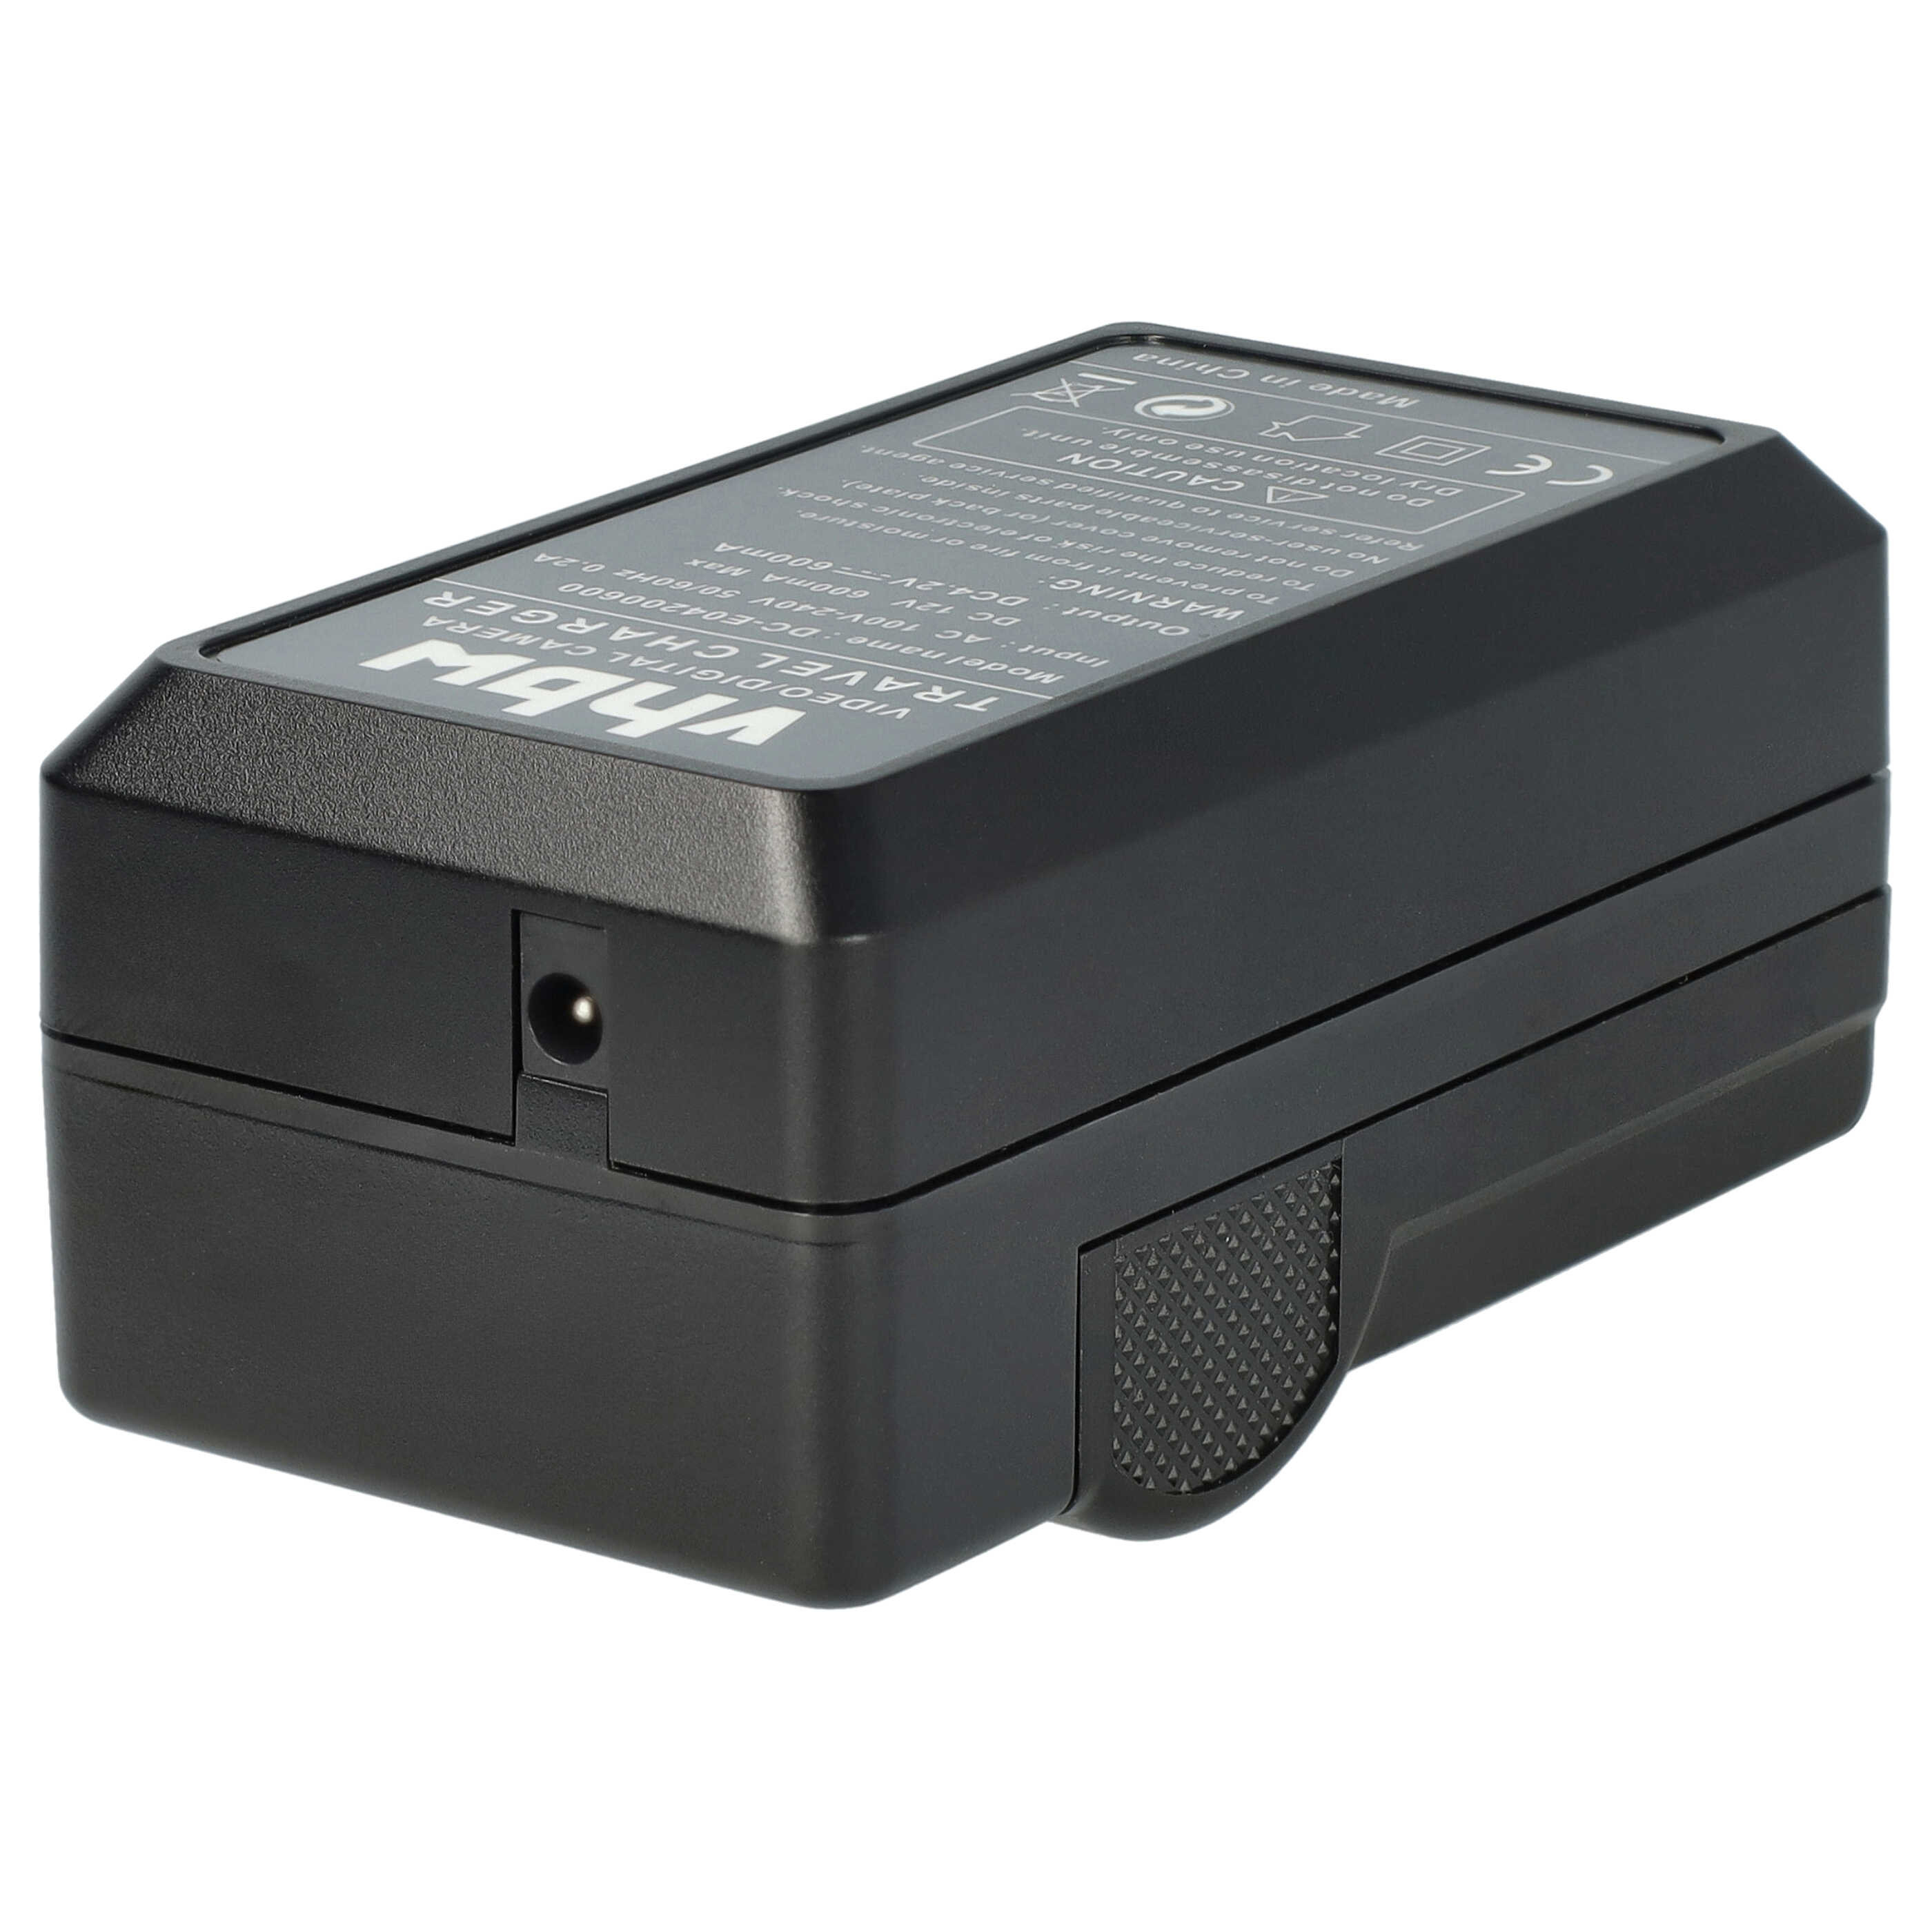 Akku Ladegerät passend für Sony NP-FC10 Kamera u.a. - 0,6 A, 4,2 V